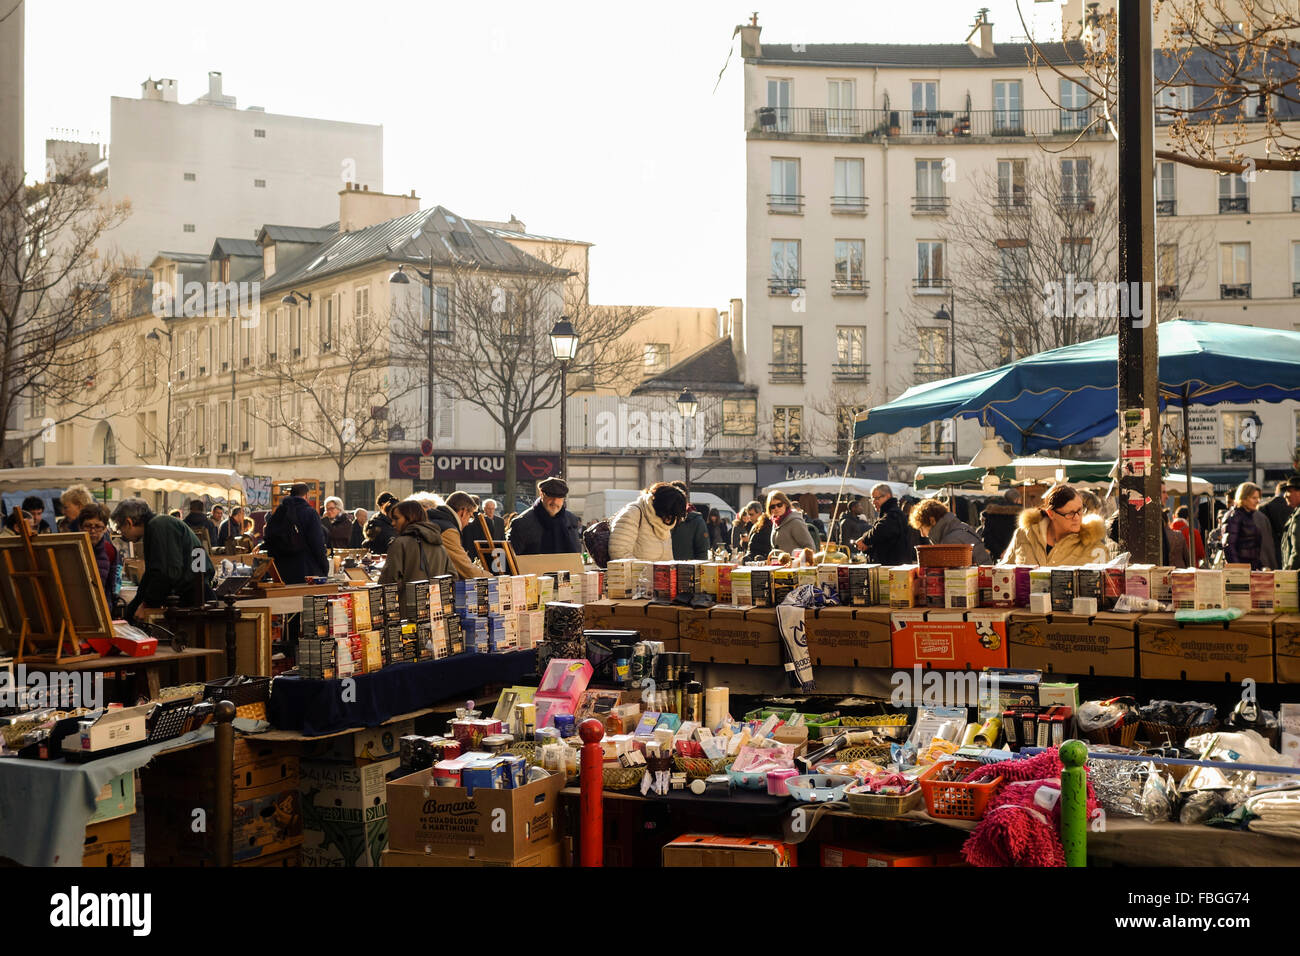 Flohmarkt am Ort d'aligre, einen lebhaften Markt auf dem Platz Aligre. Paris, Frankreich. Stockfoto